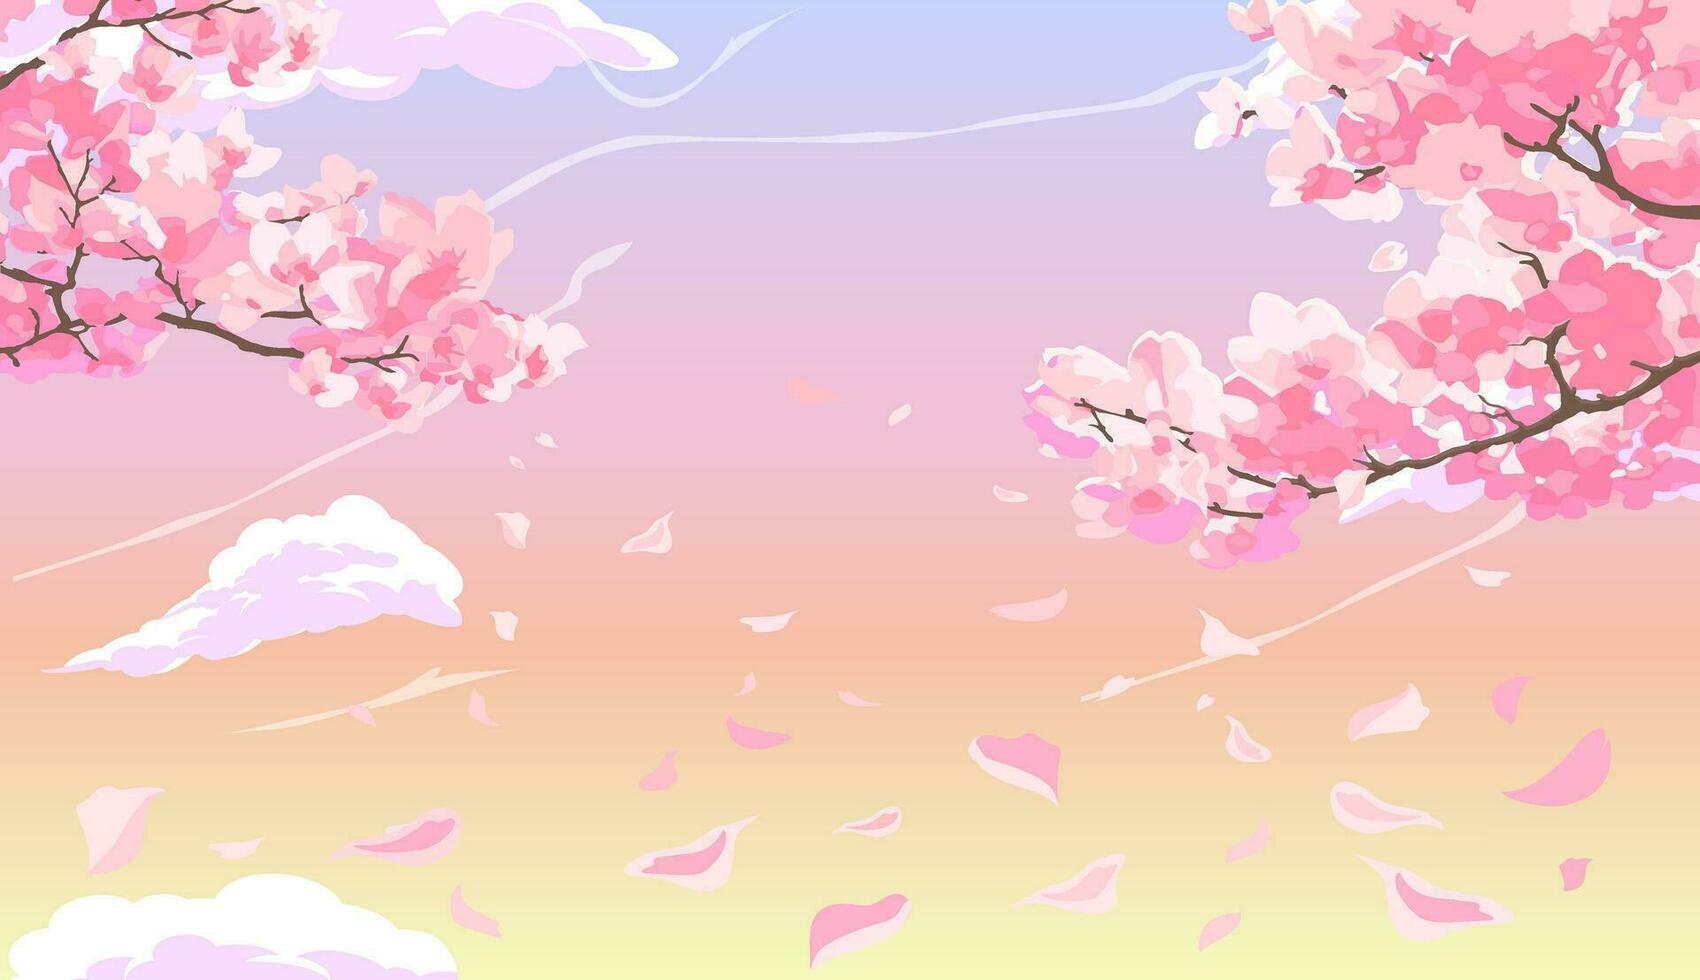 rosa blomstrande sakura grenar med kronblad faller mot de bakgrund av en rosa solnedgång himmel med moln. vektor